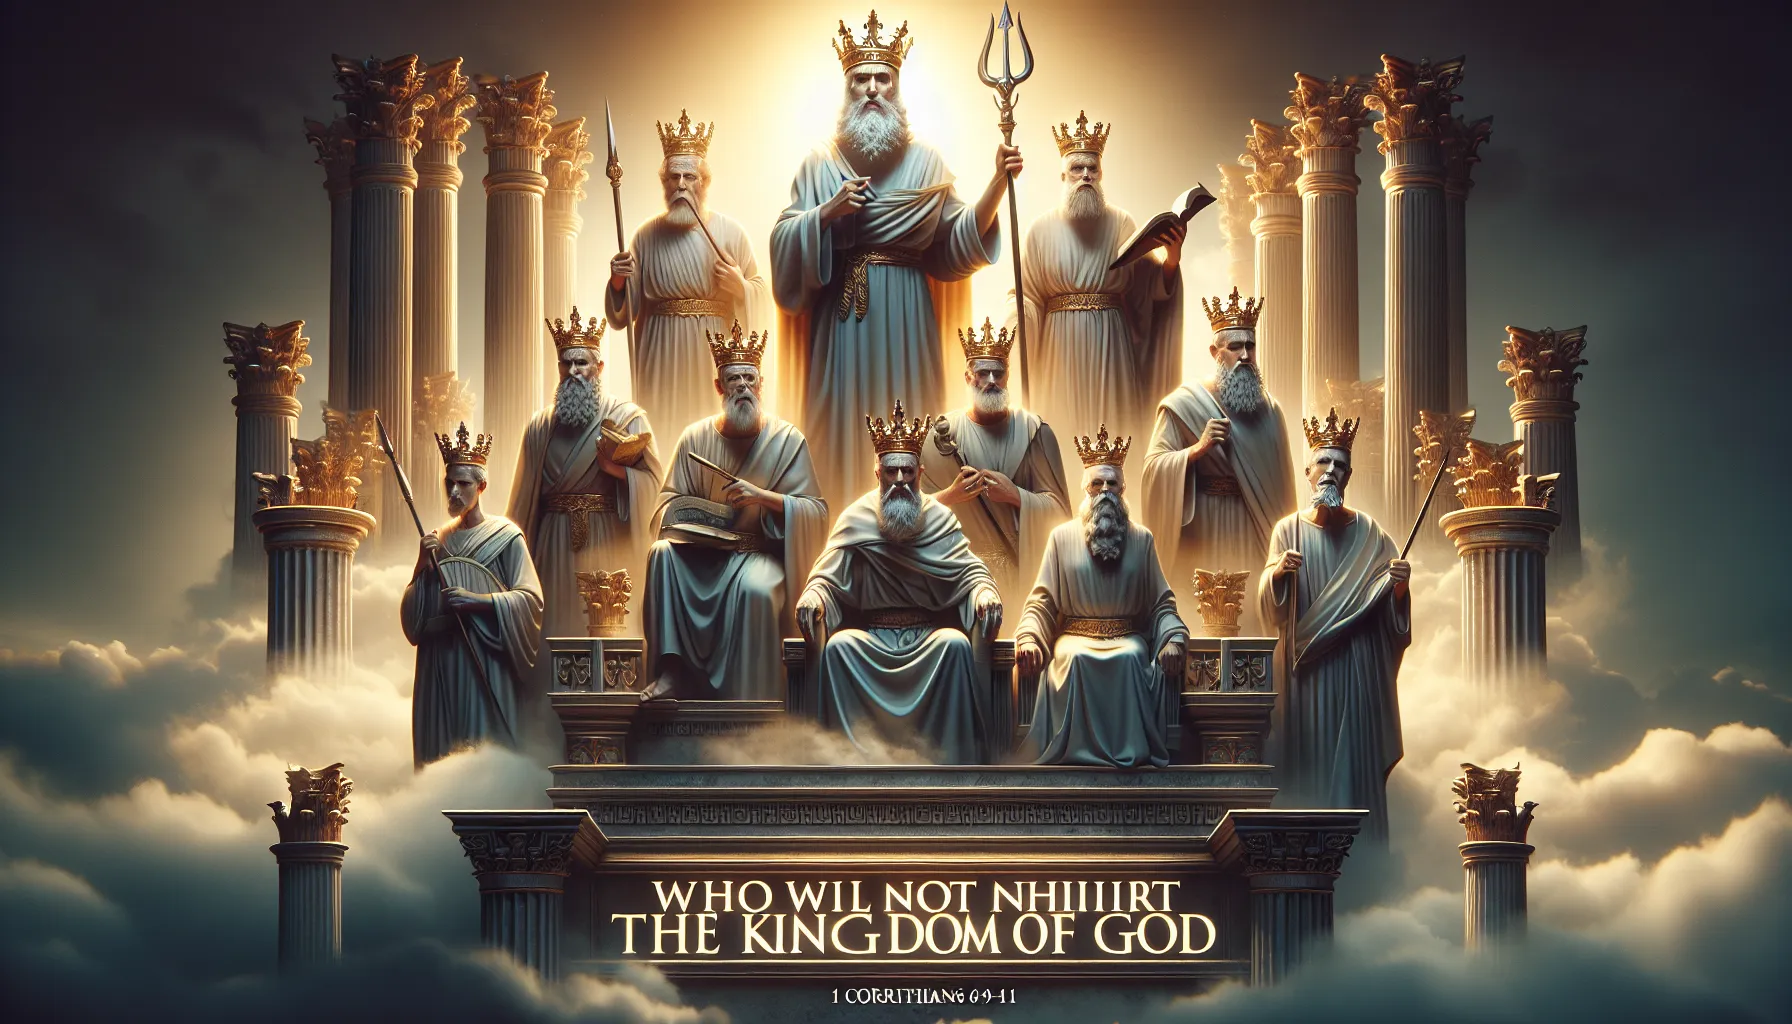 Imagen representando la cita bíblica de 1 Corintios 6:9-11 que discute quiénes no heredarán el reino de Dios.